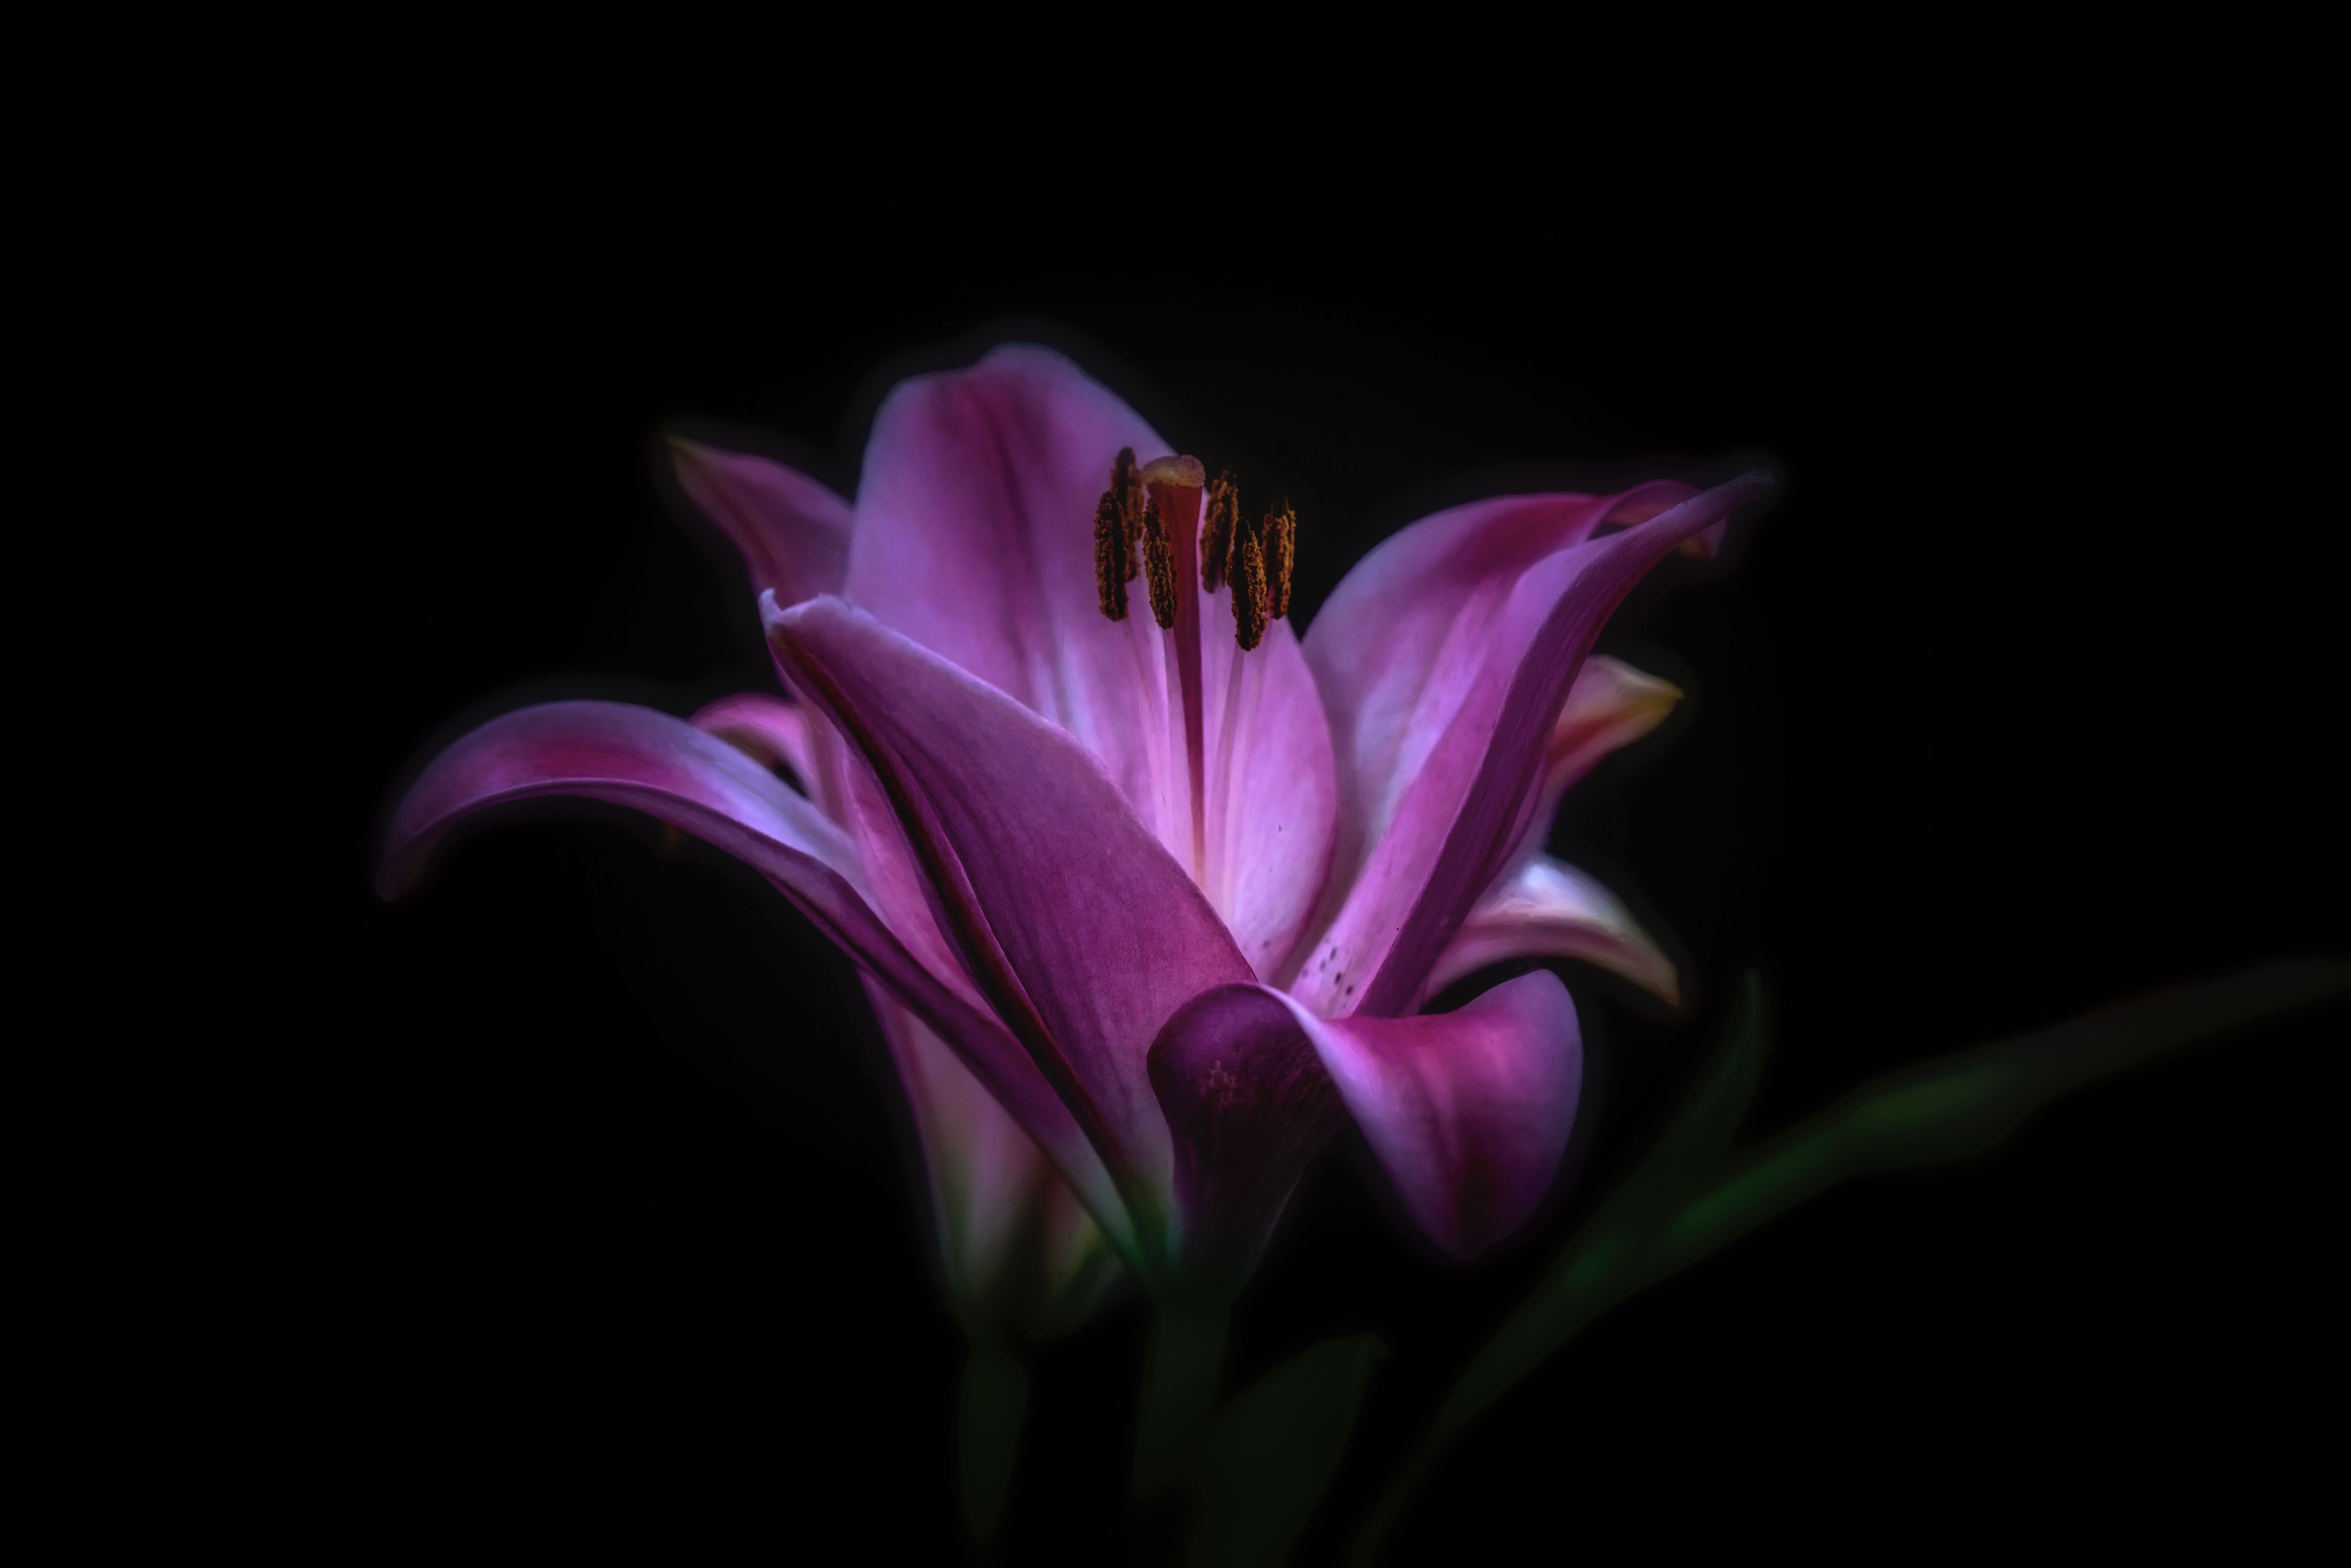 Earth Flower Lily Purple Flower 7952x5304